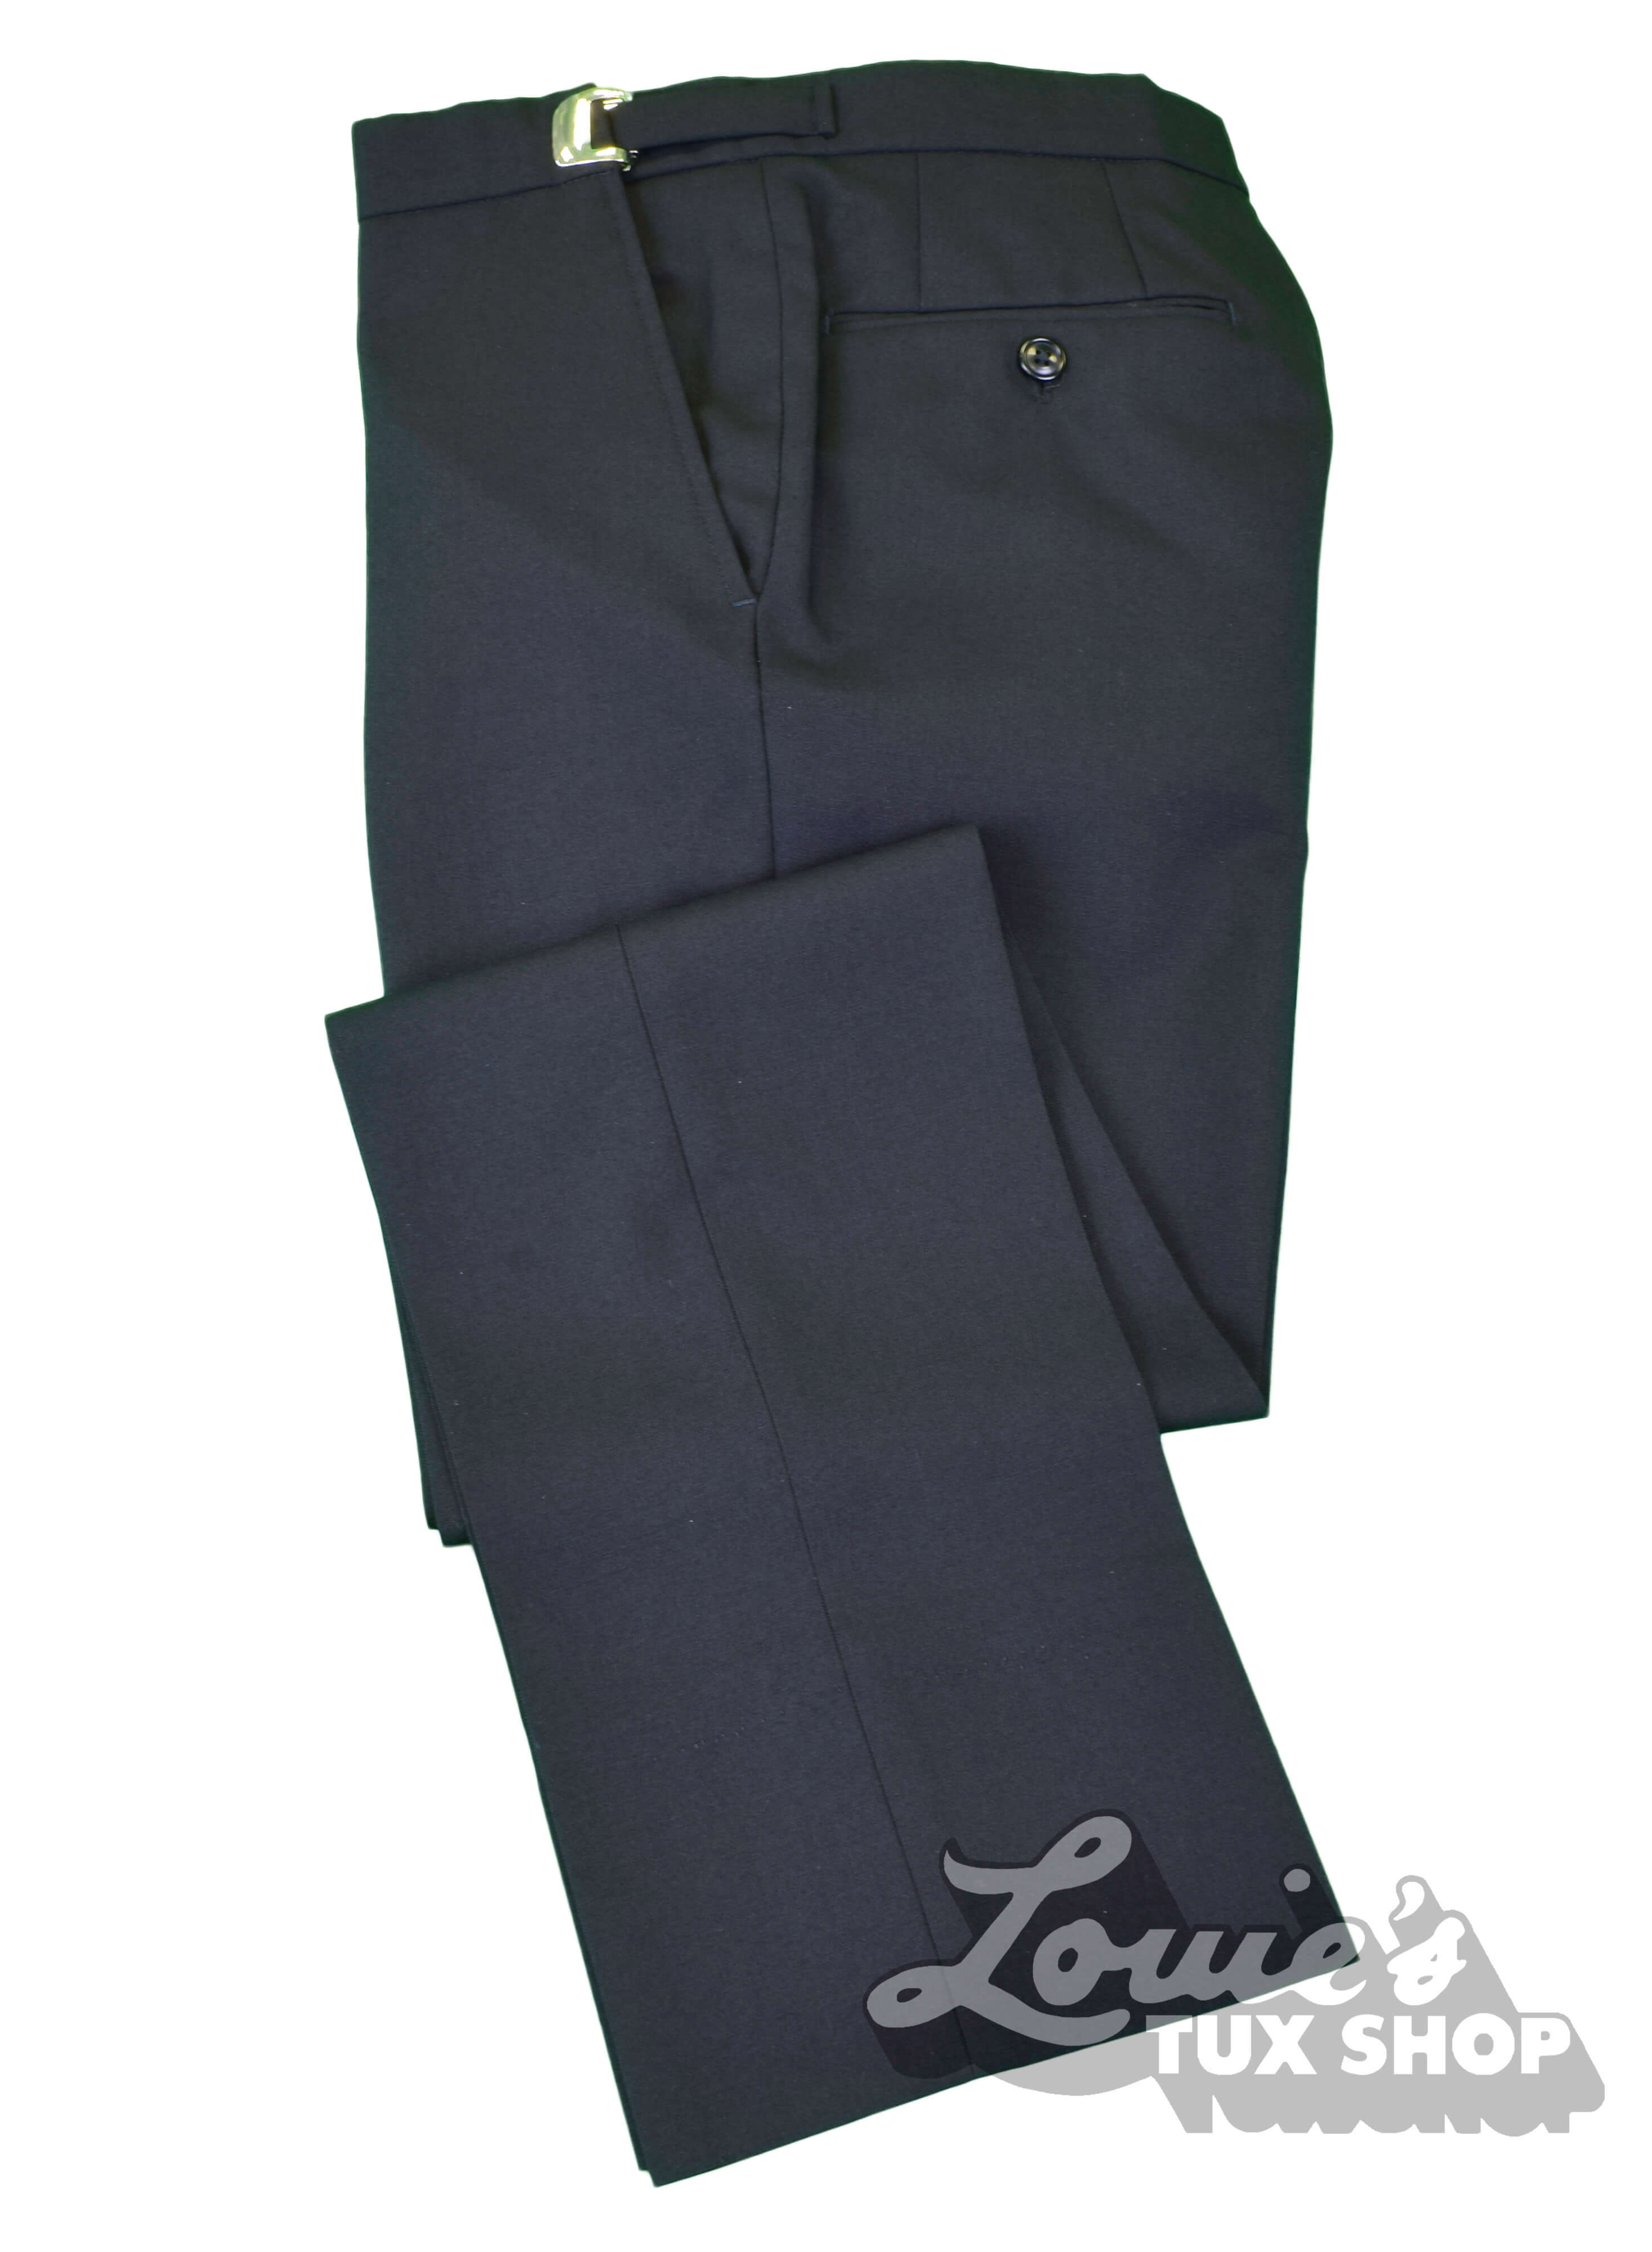 Ike Behar Black Suit Plain Front Pants